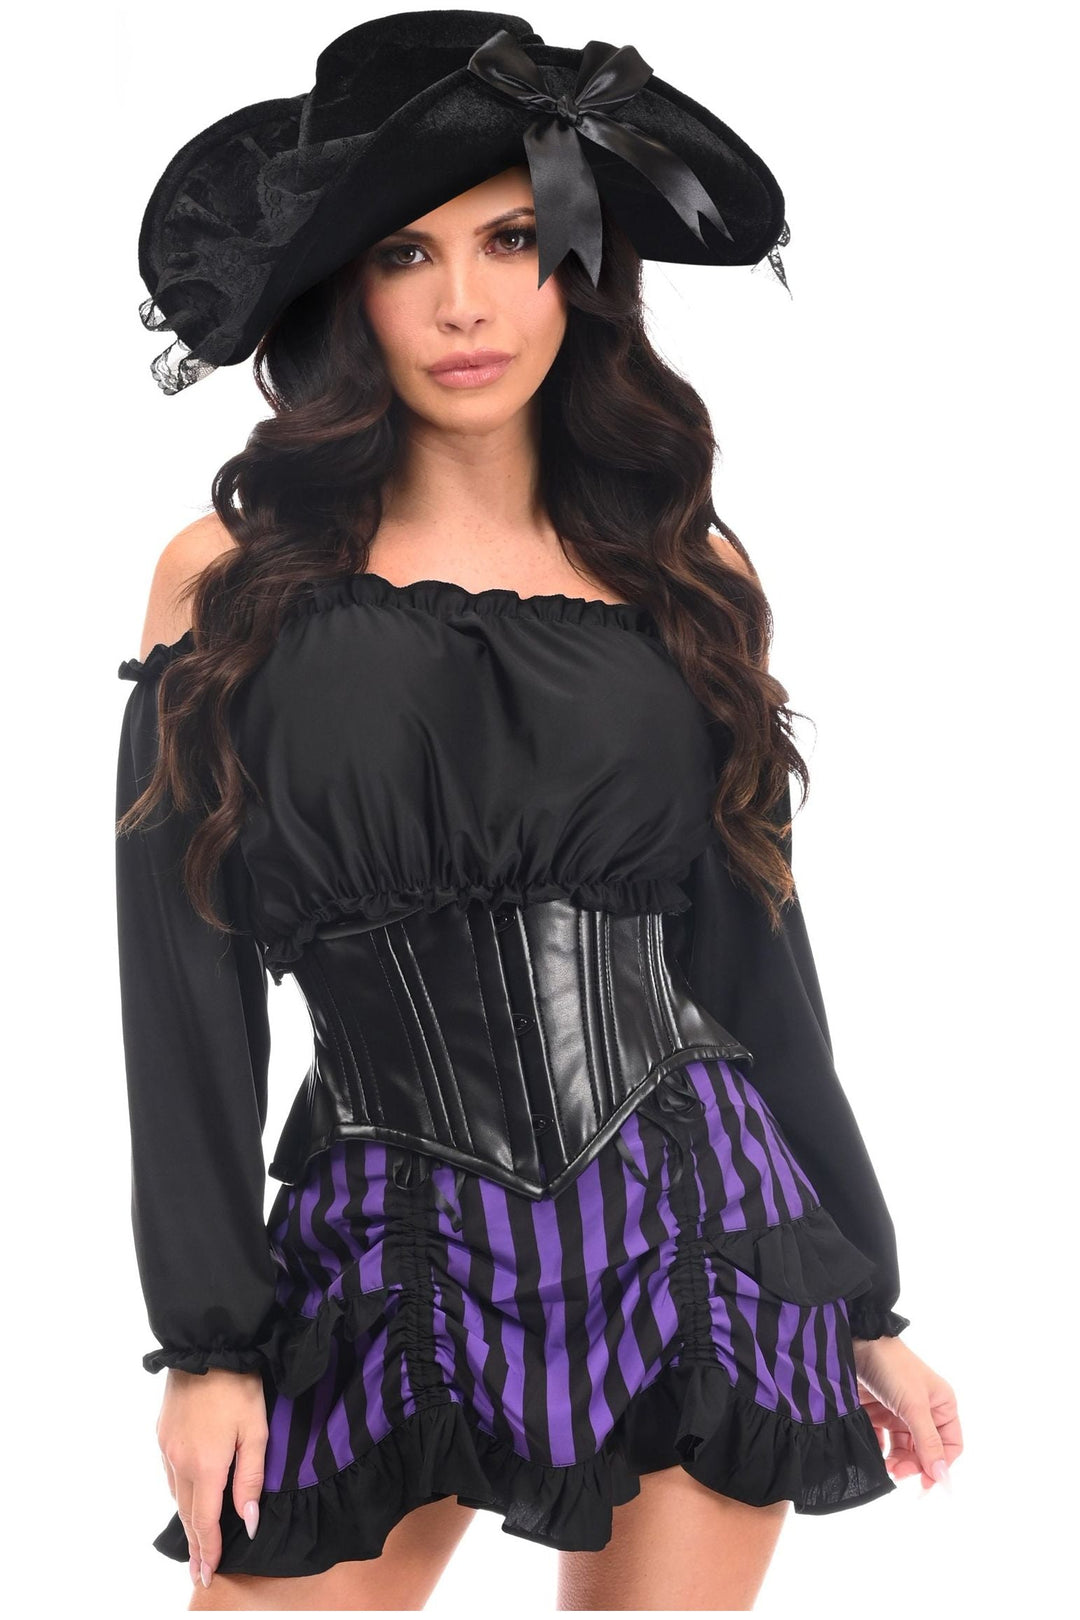 Top Drawer 4 PC Black/Purple Striped Premium Pirate Corset Costume